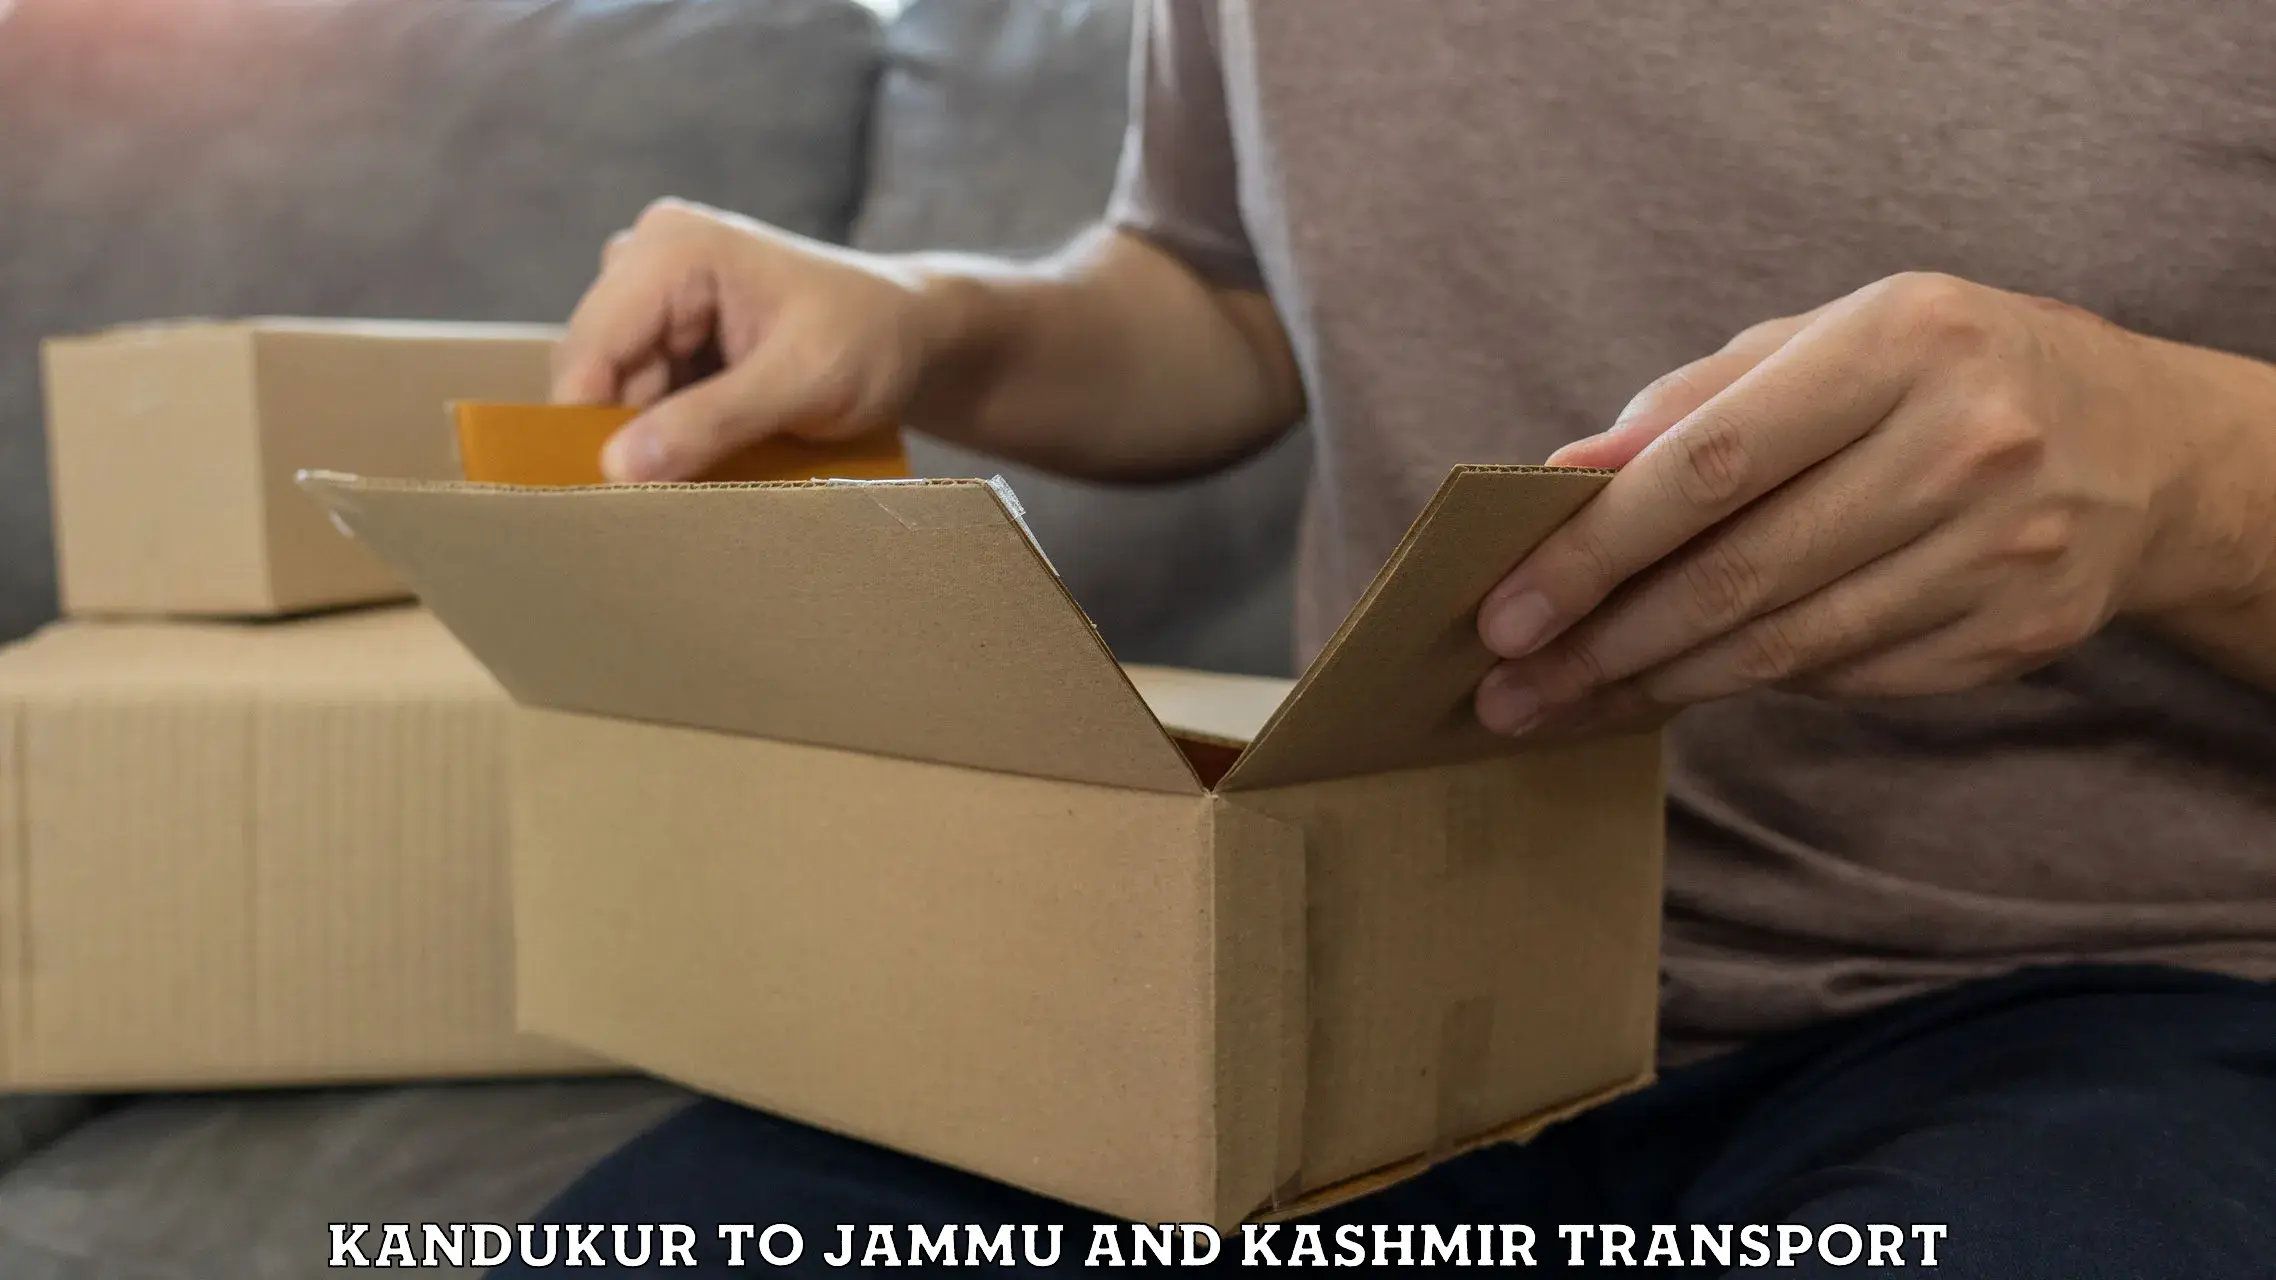 Express transport services Kandukur to Jammu and Kashmir